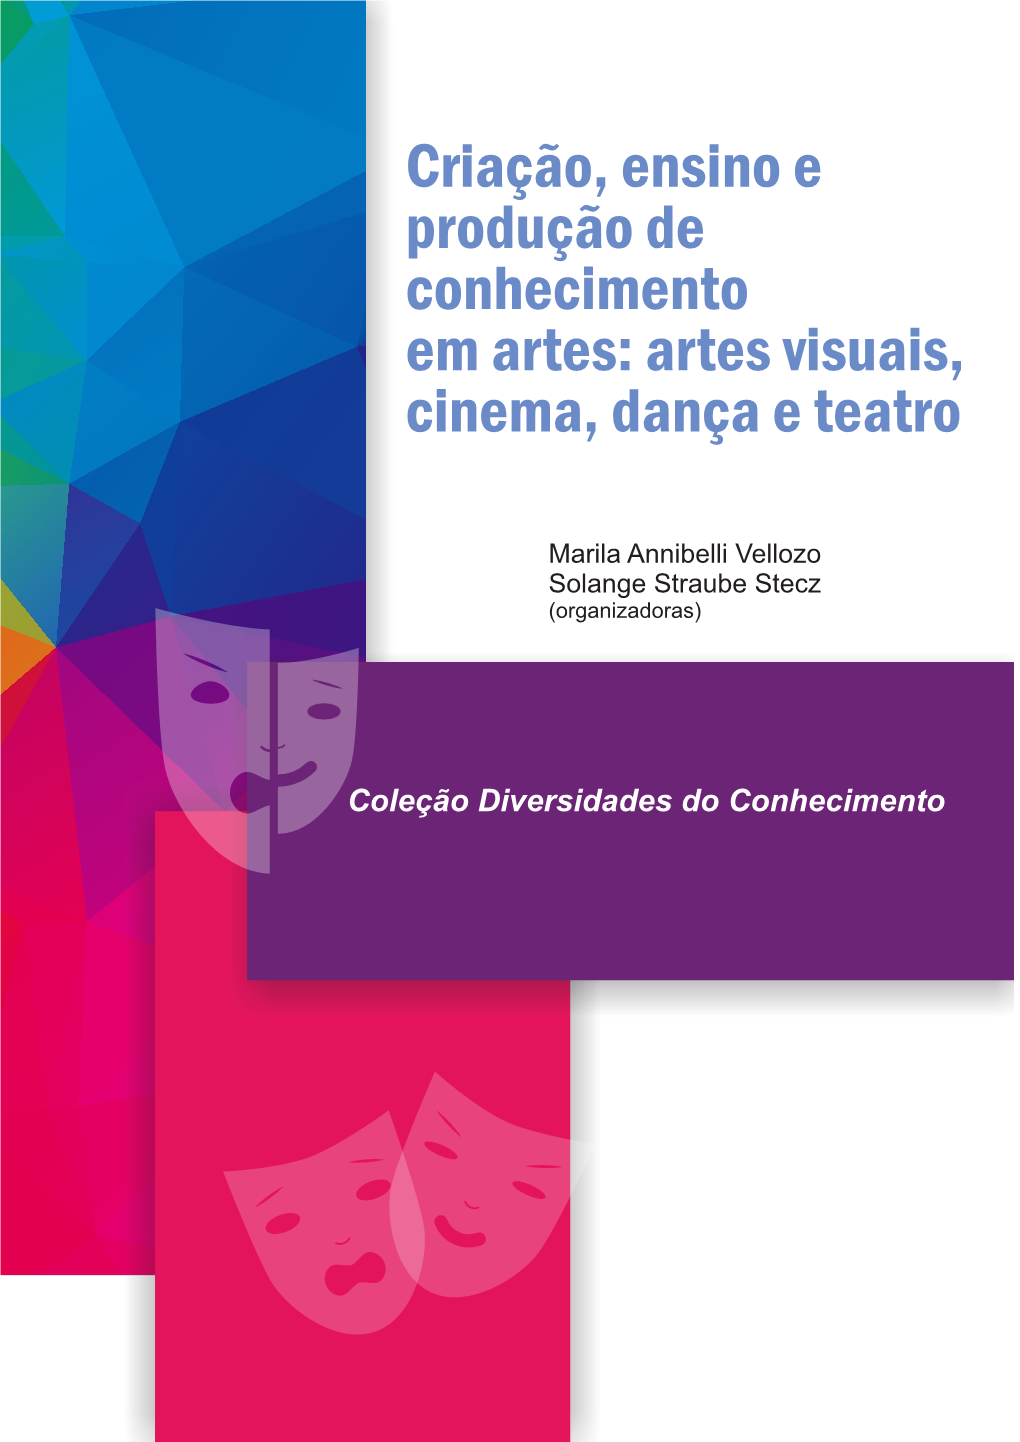 Artes Visuais, Cinema, Dança E Teatro” Vinculados À Unespar